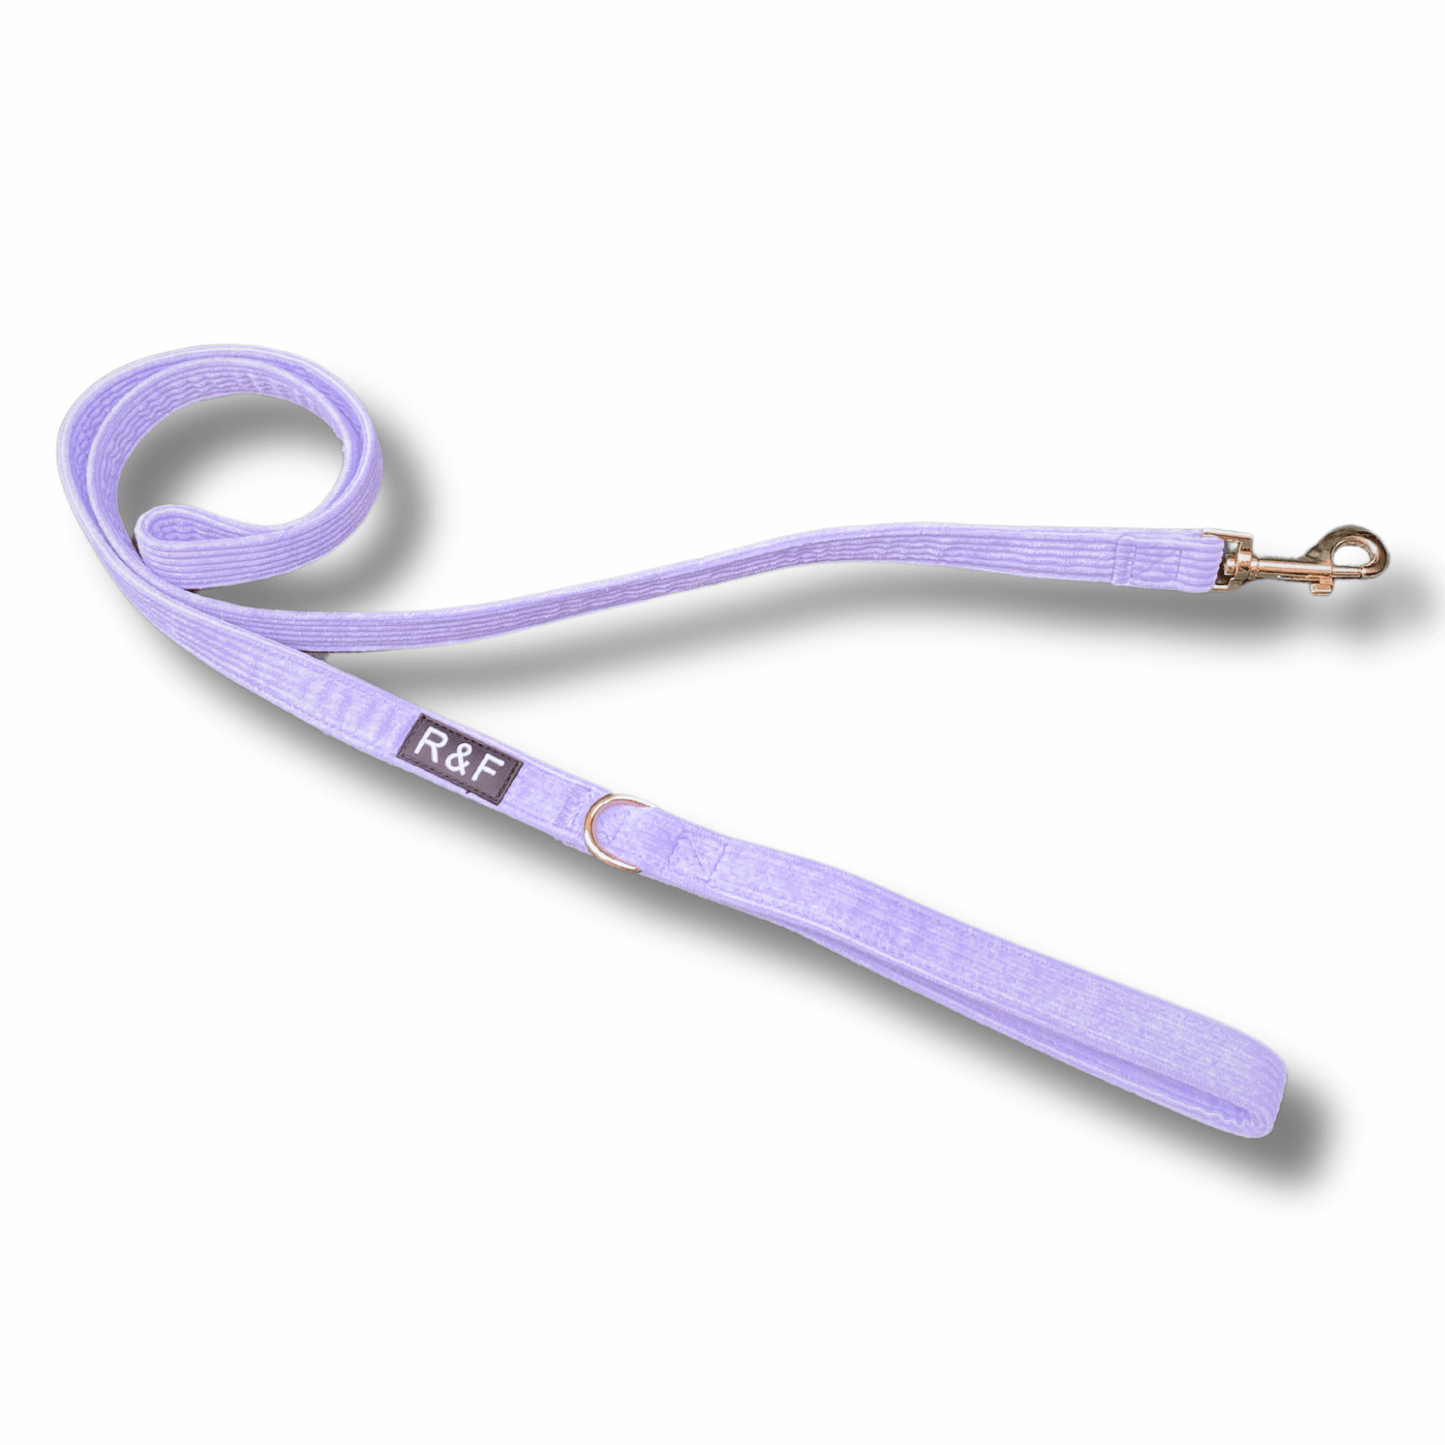 Lavender dog harness, dog leash and poop bag holder